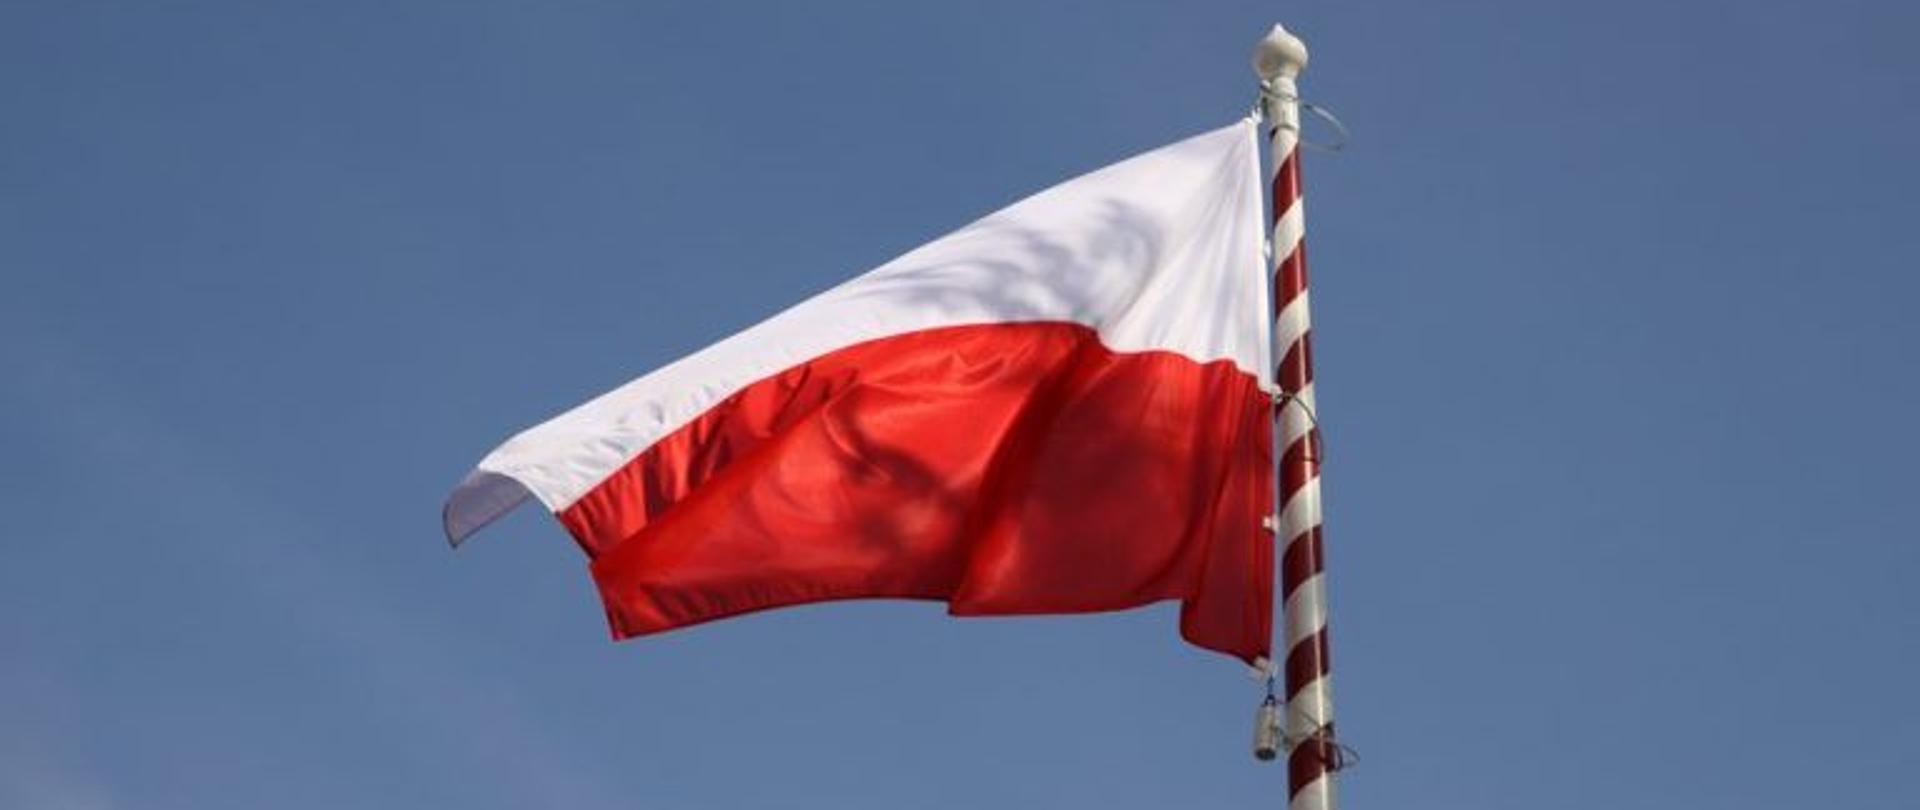 Flaga biało - czerwona powiewająca na wietrze.